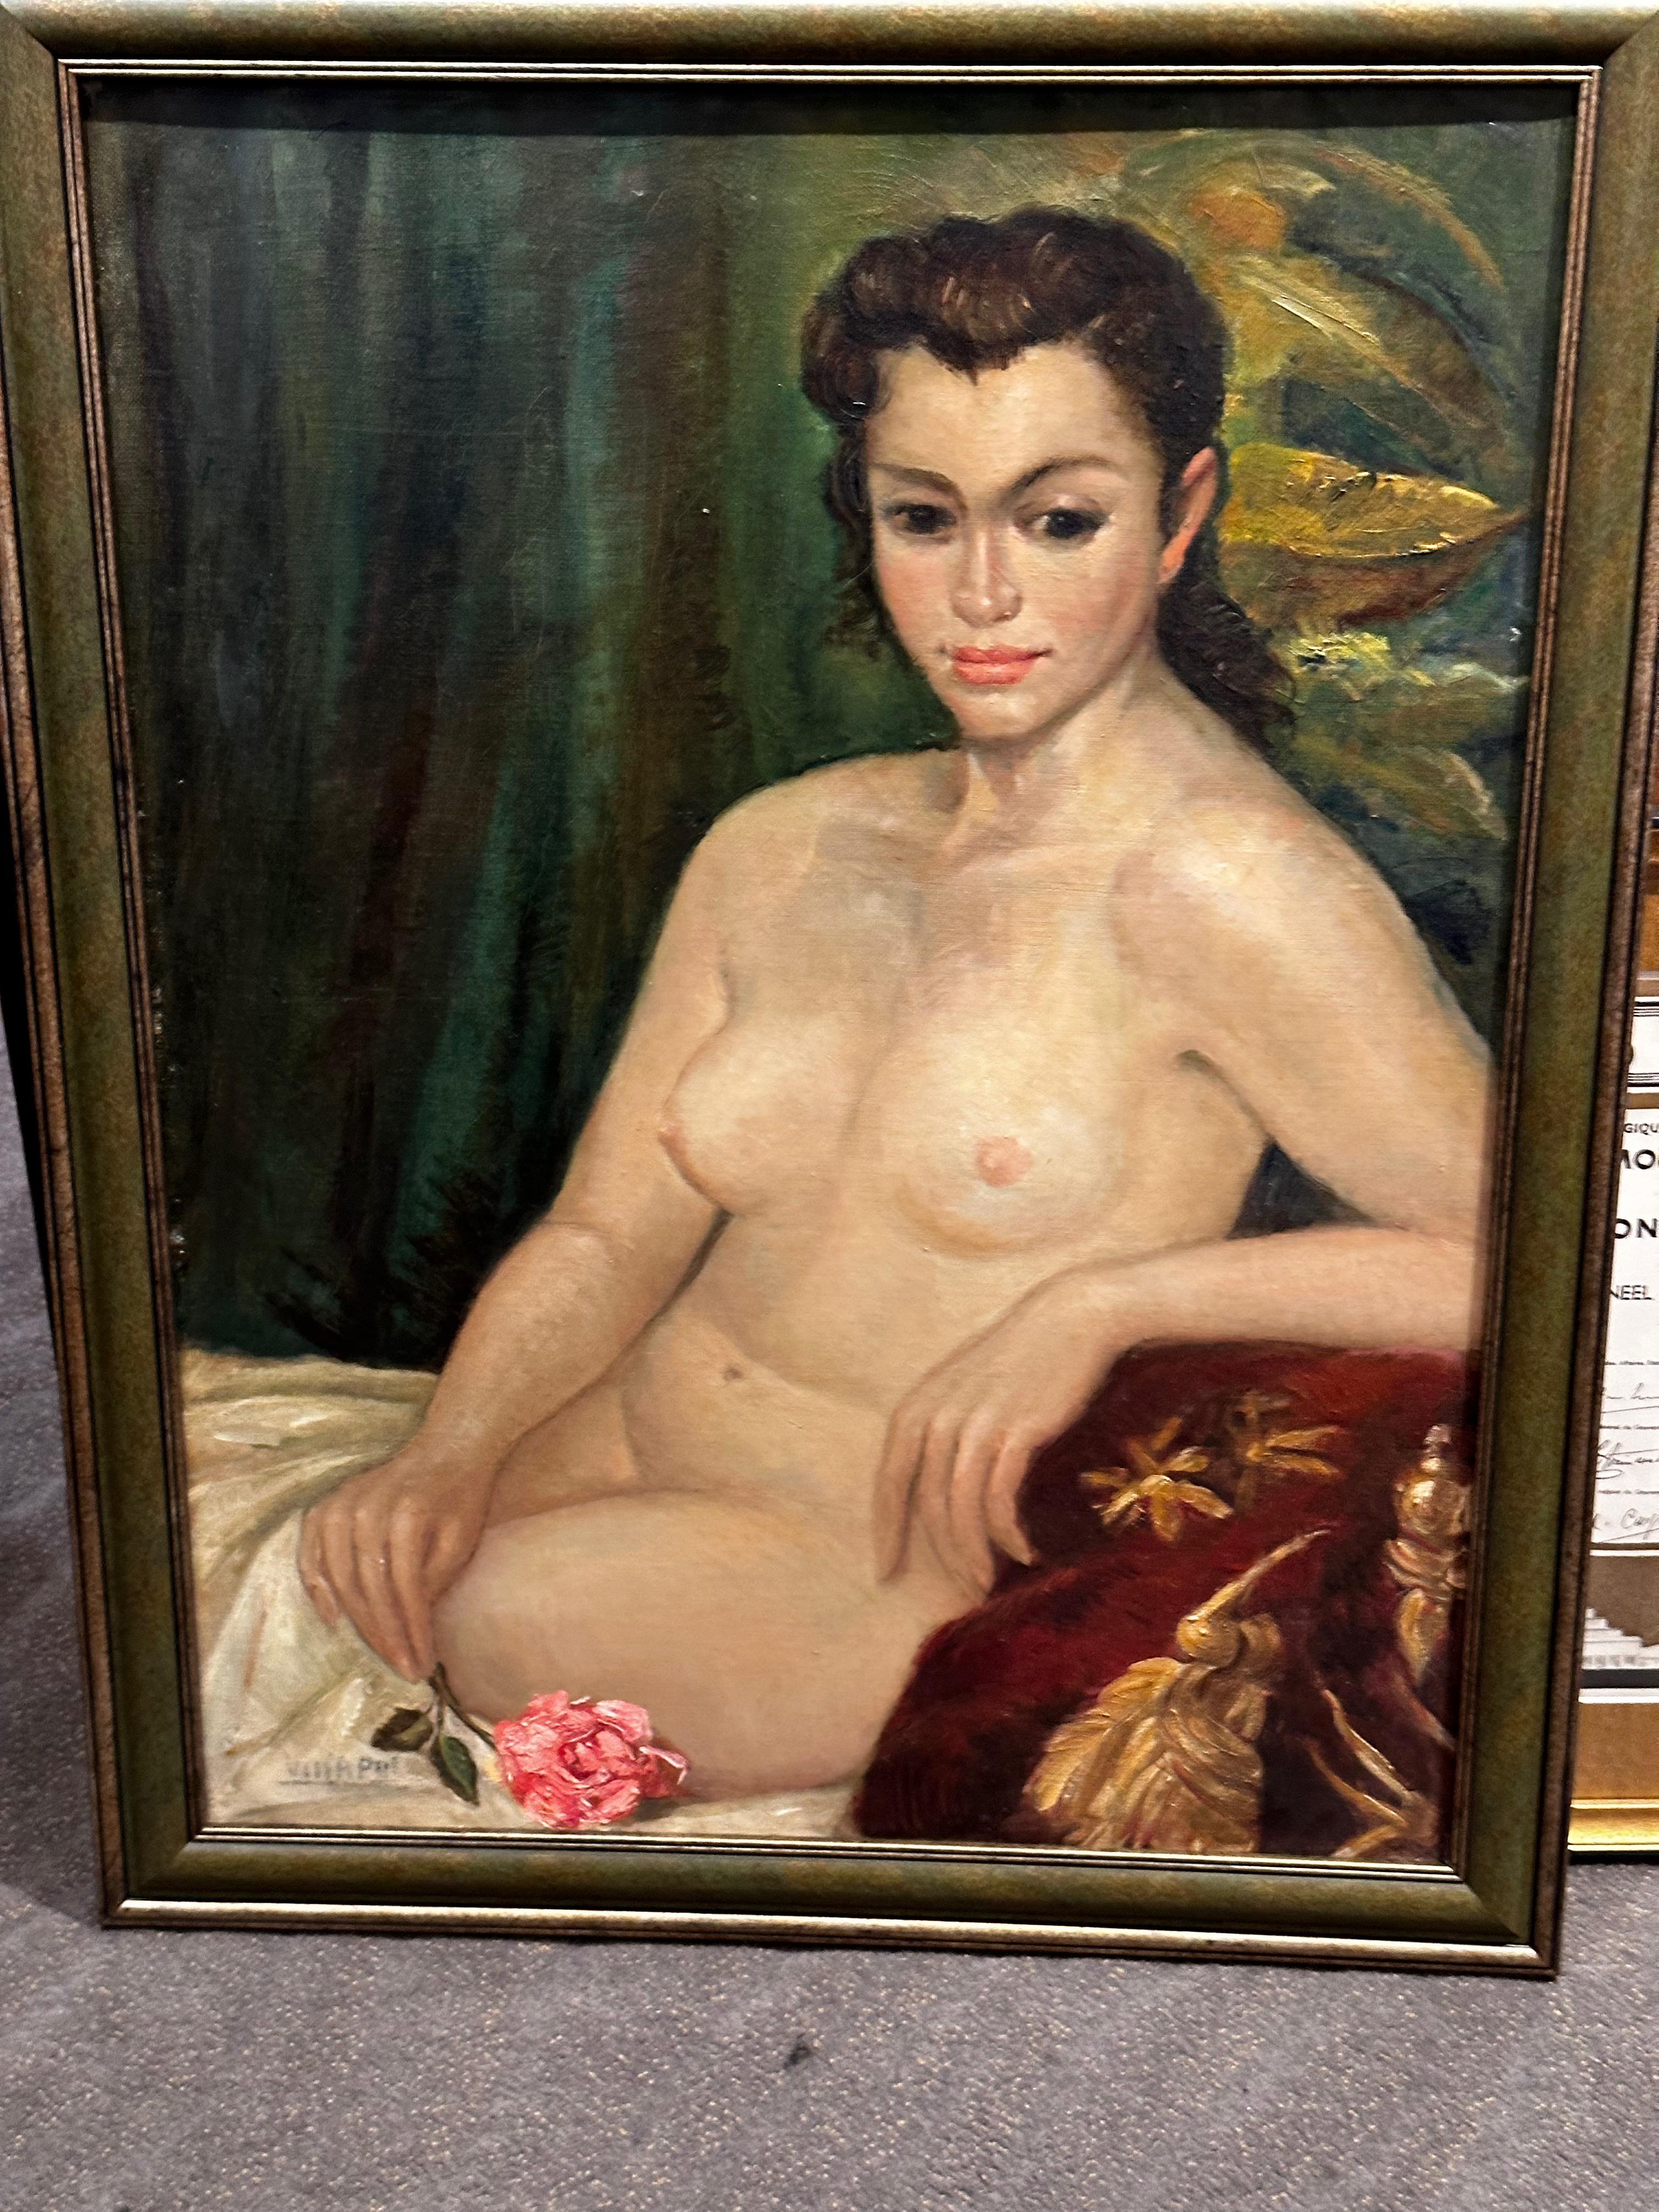 Une peinture à l'huile classique Art déco d'une femme tenant une rose unique qui projette beauté et sérénité.

Un nu allongé est l'essence même de ce qui est pur et naturel, mais aussi désirable et interdit.  Les images de nu sont universelles et